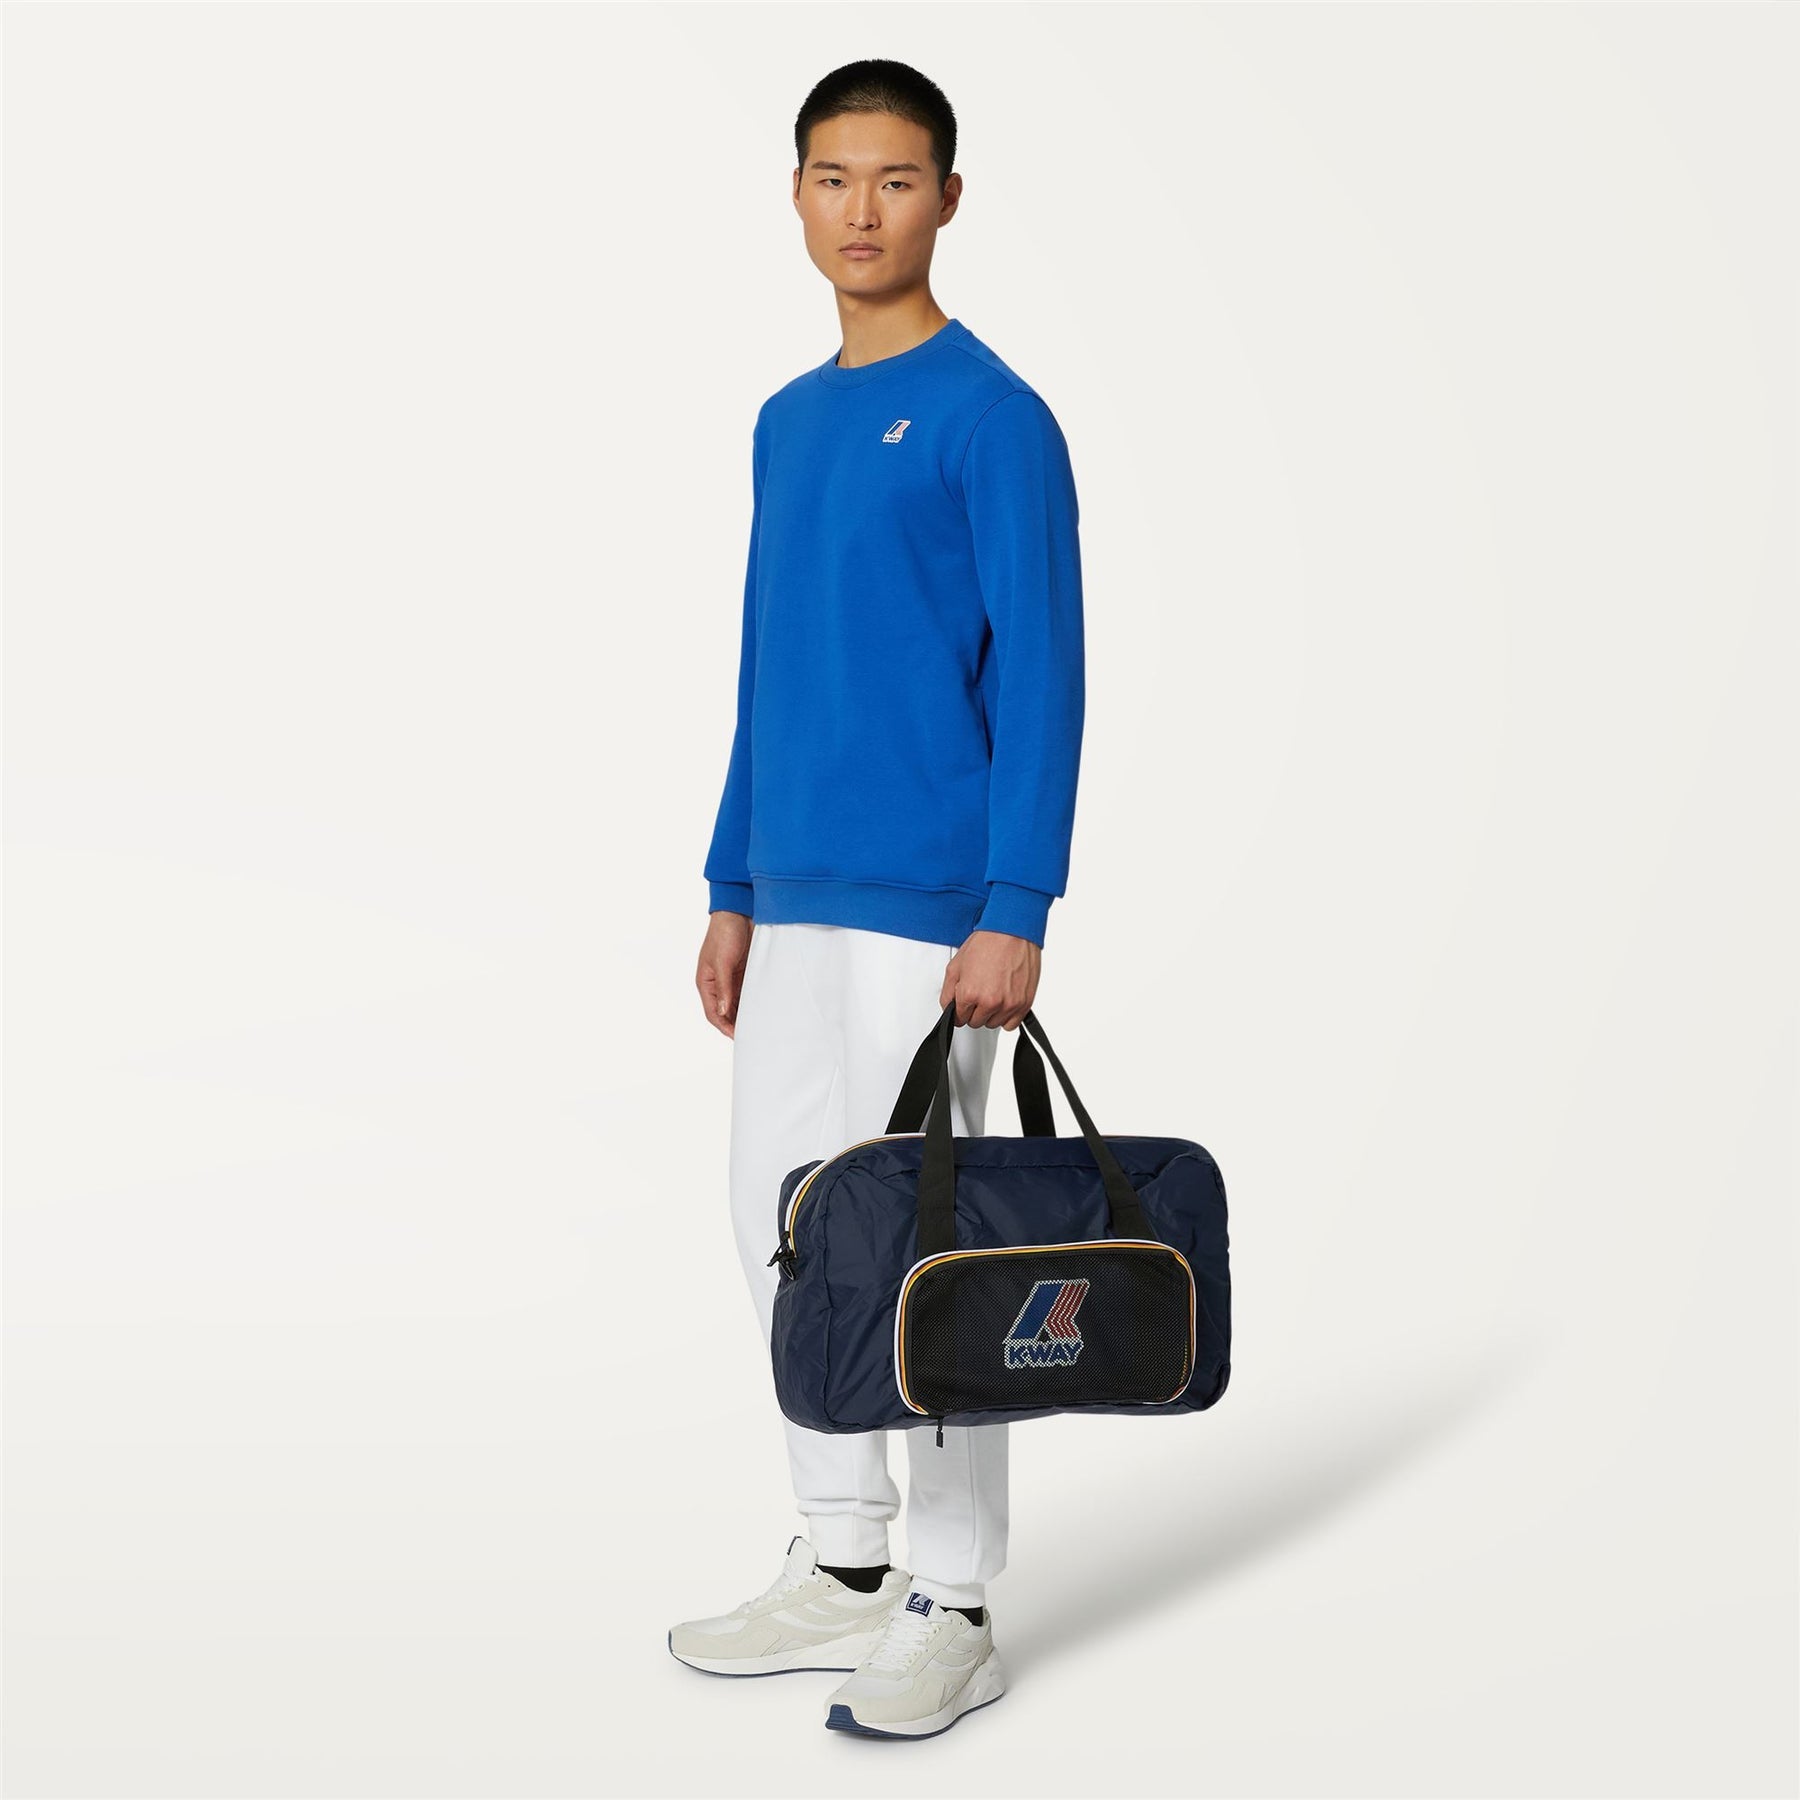 Emilien - Packable Ripstop Duffle Bag in Blue Depht